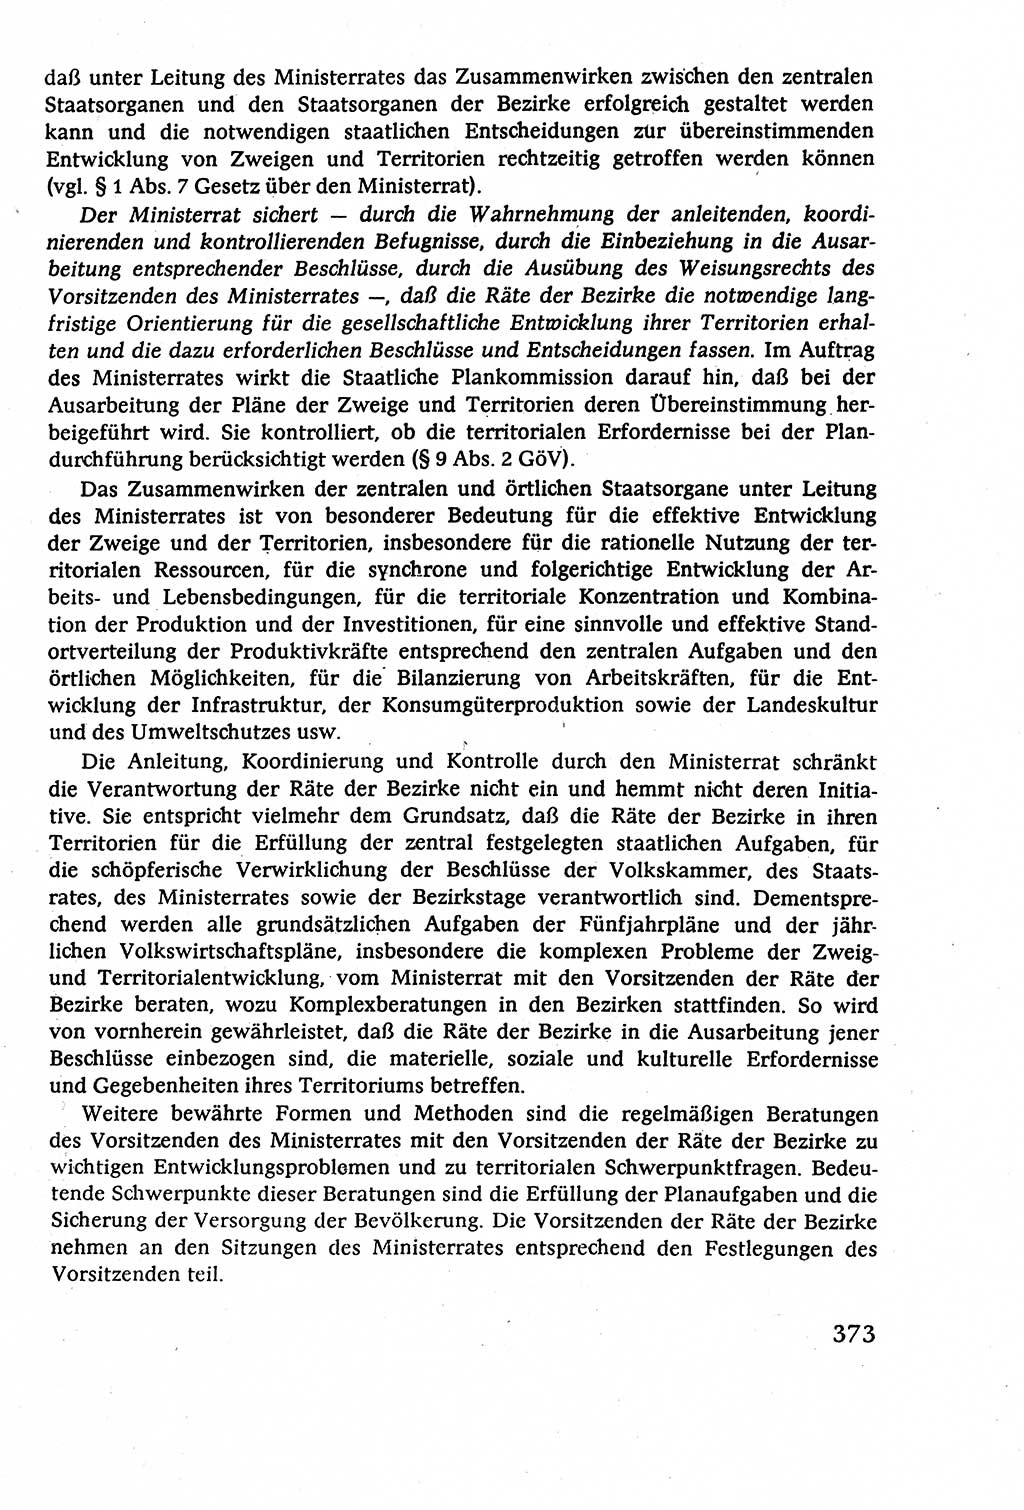 Staatsrecht der DDR (Deutsche Demokratische Republik), Lehrbuch 1977, Seite 373 (St.-R. DDR Lb. 1977, S. 373)